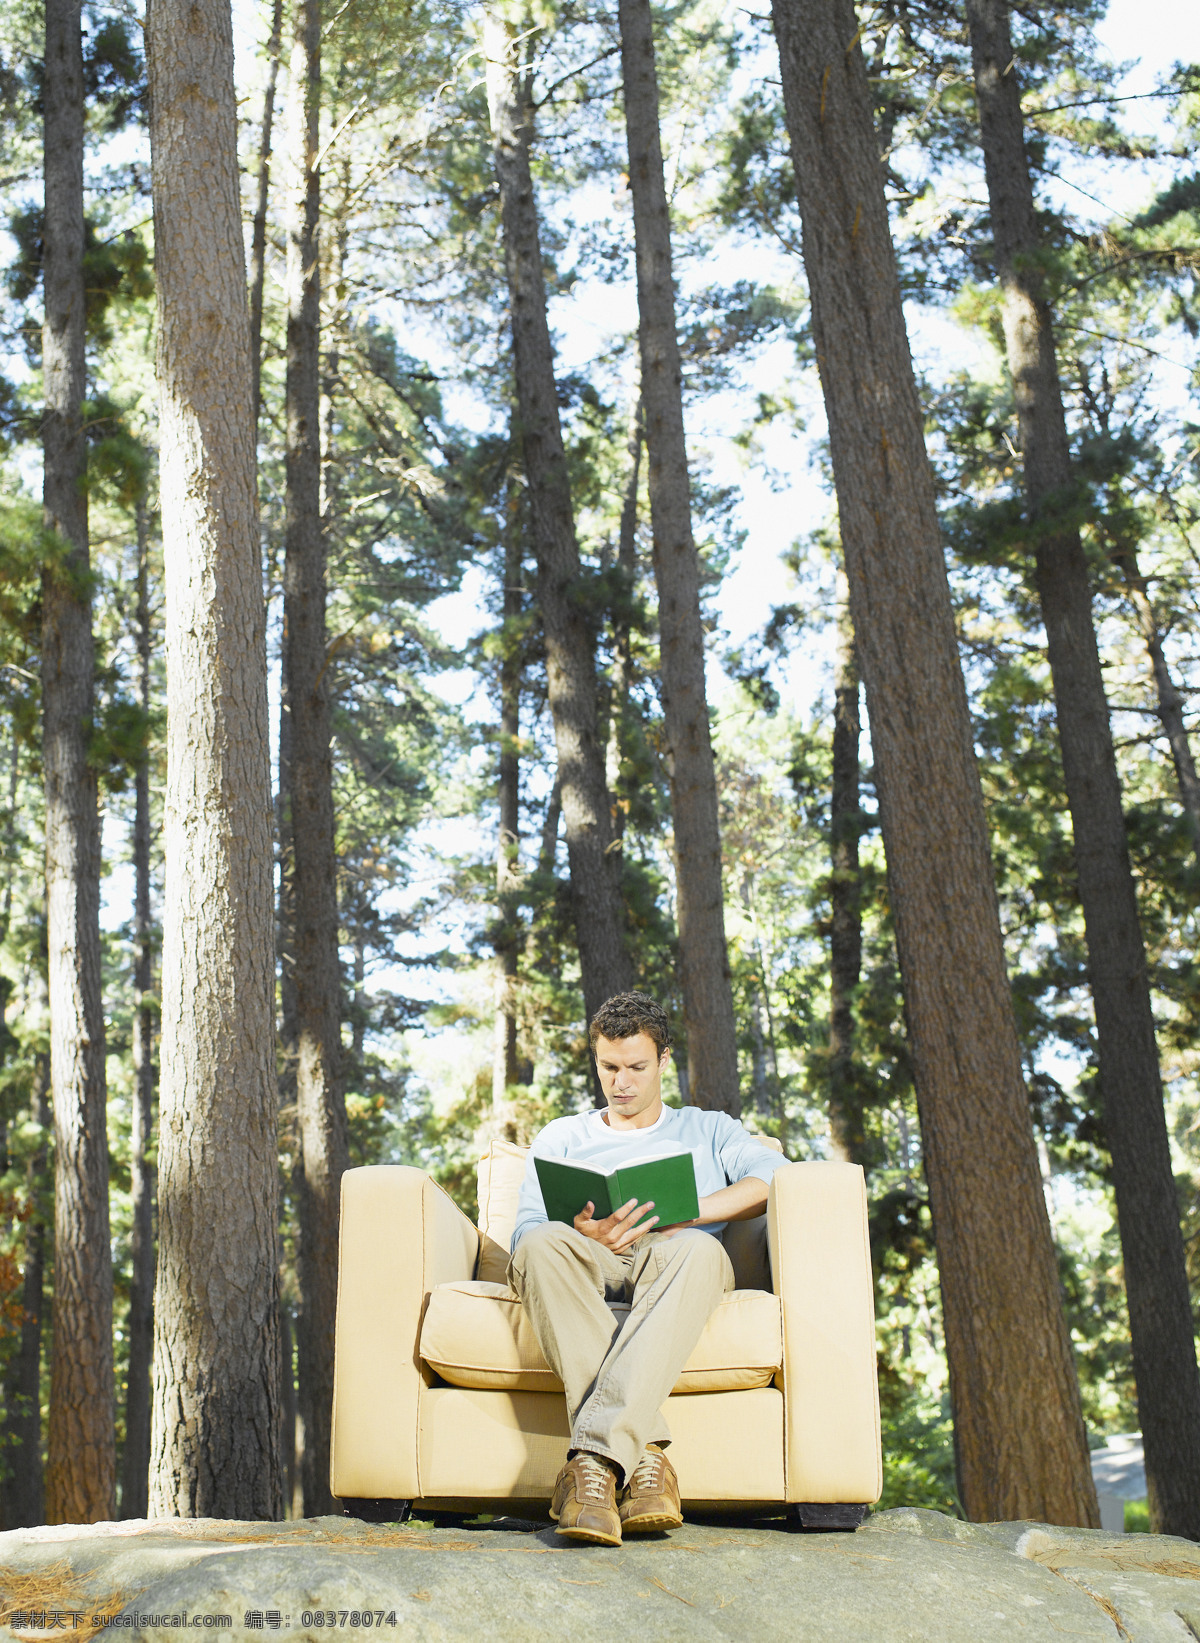 坐在 沙发 上 看书 男人 户外 户外生活 人物 树林 自然 好环境 专注 书籍 生活人物 人物图片